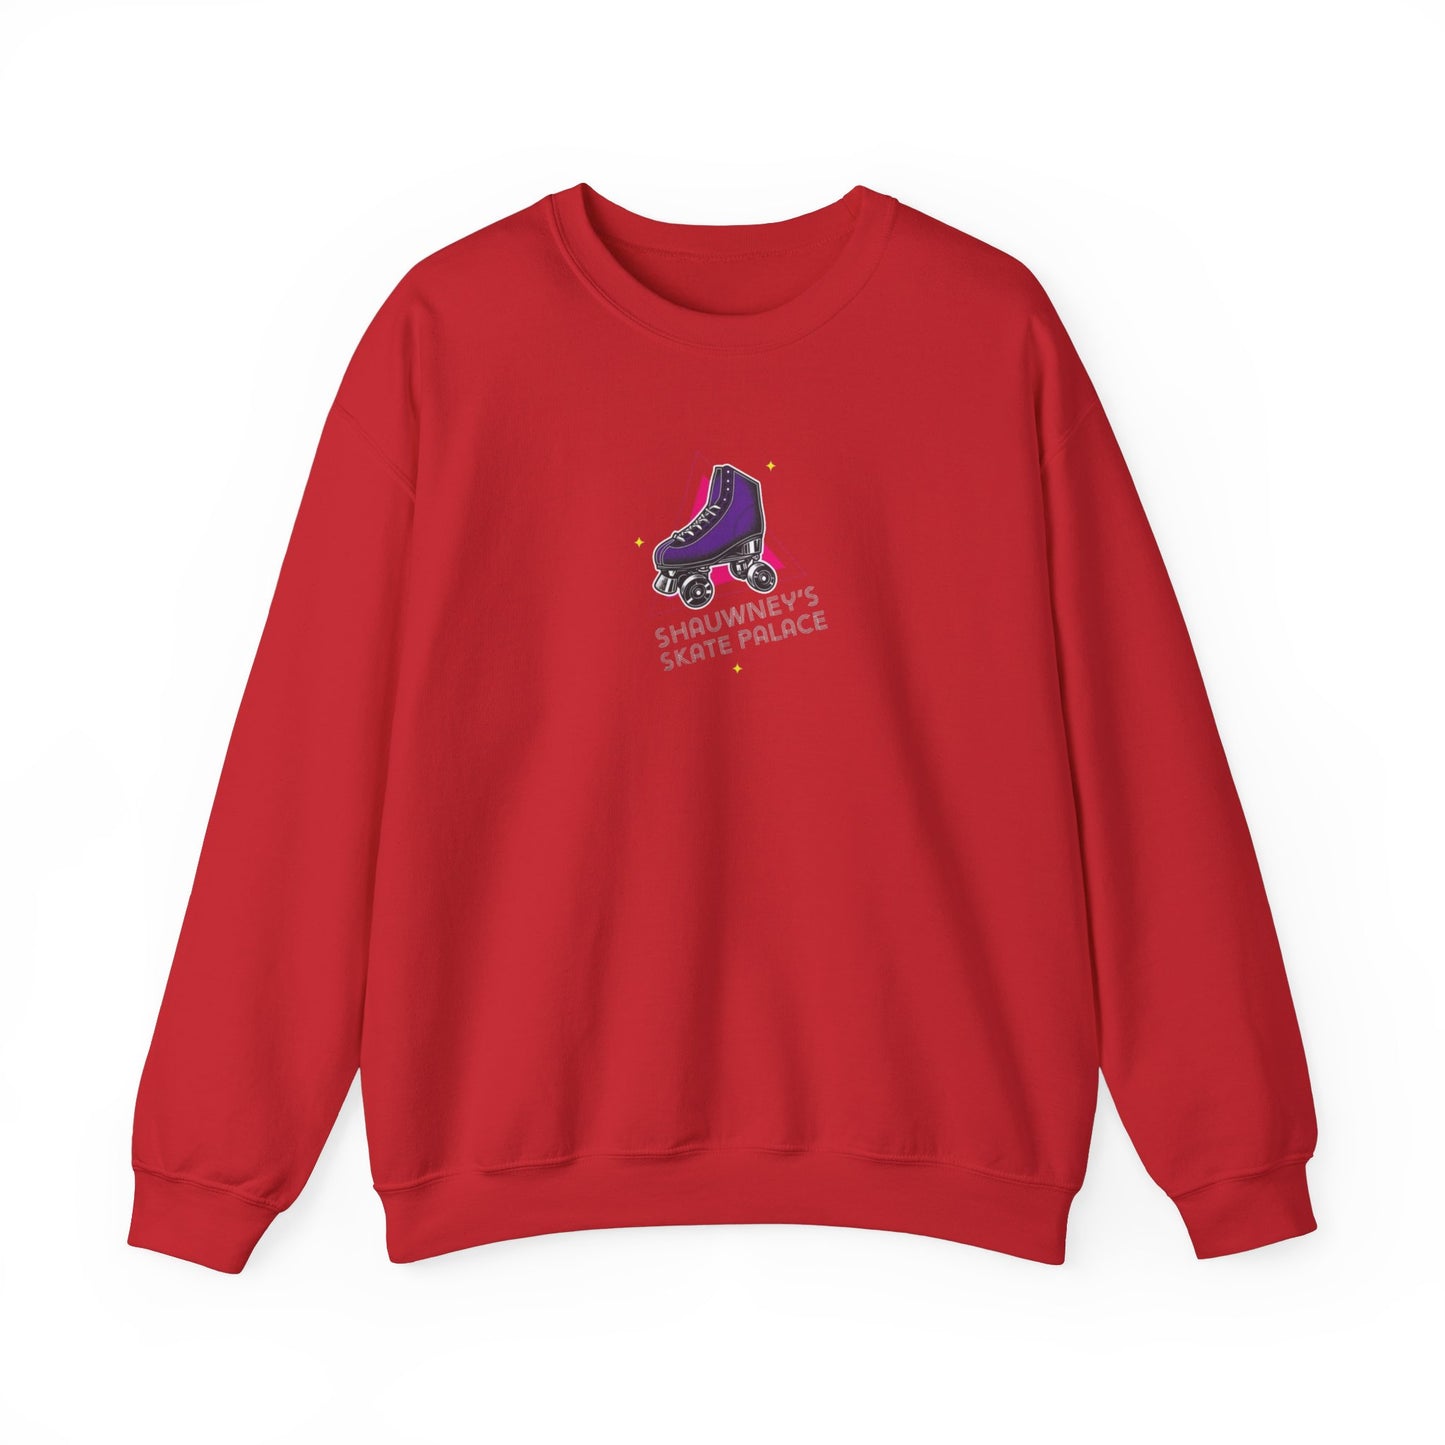 Shauwney's Skate Palace Crewneck Sweatshirt